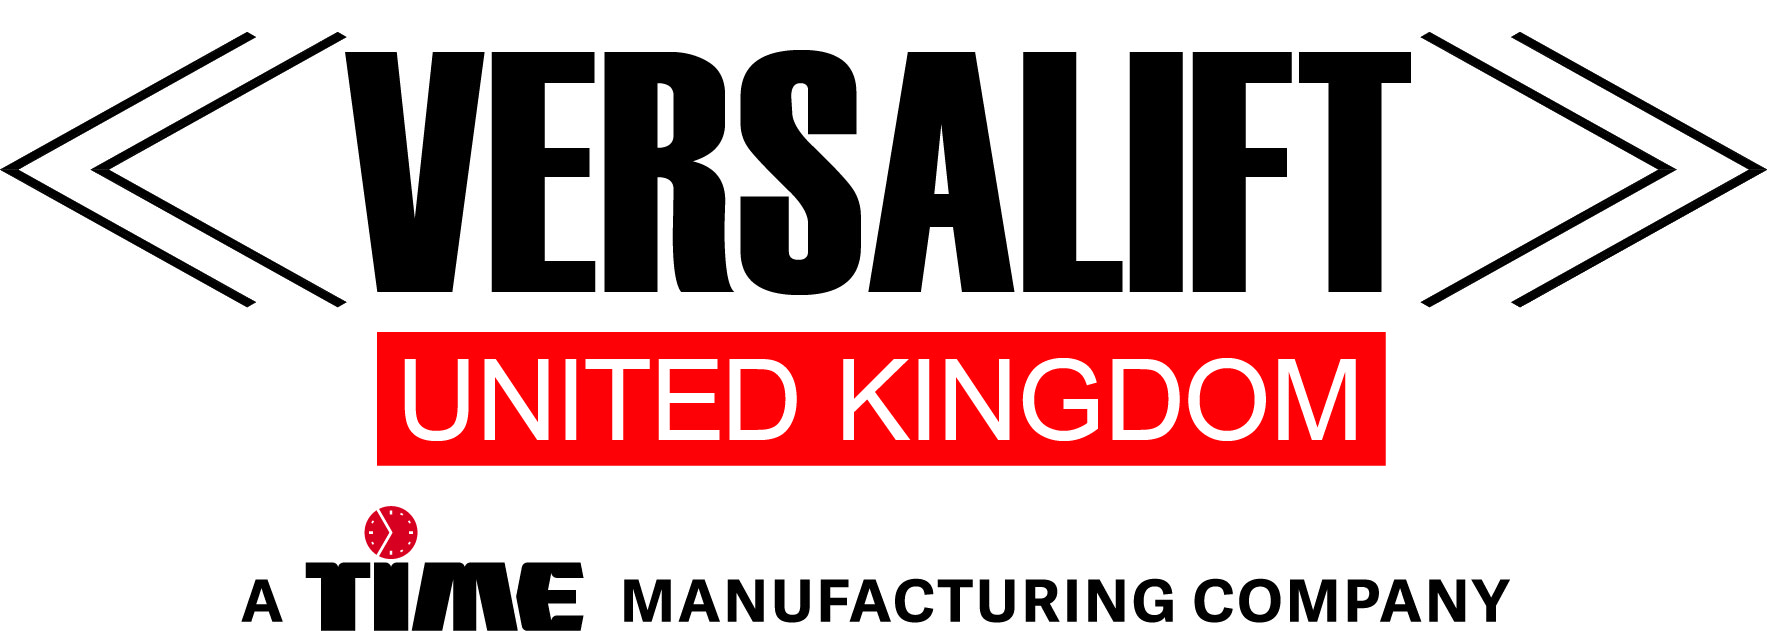 Versalift_Company Name_UK